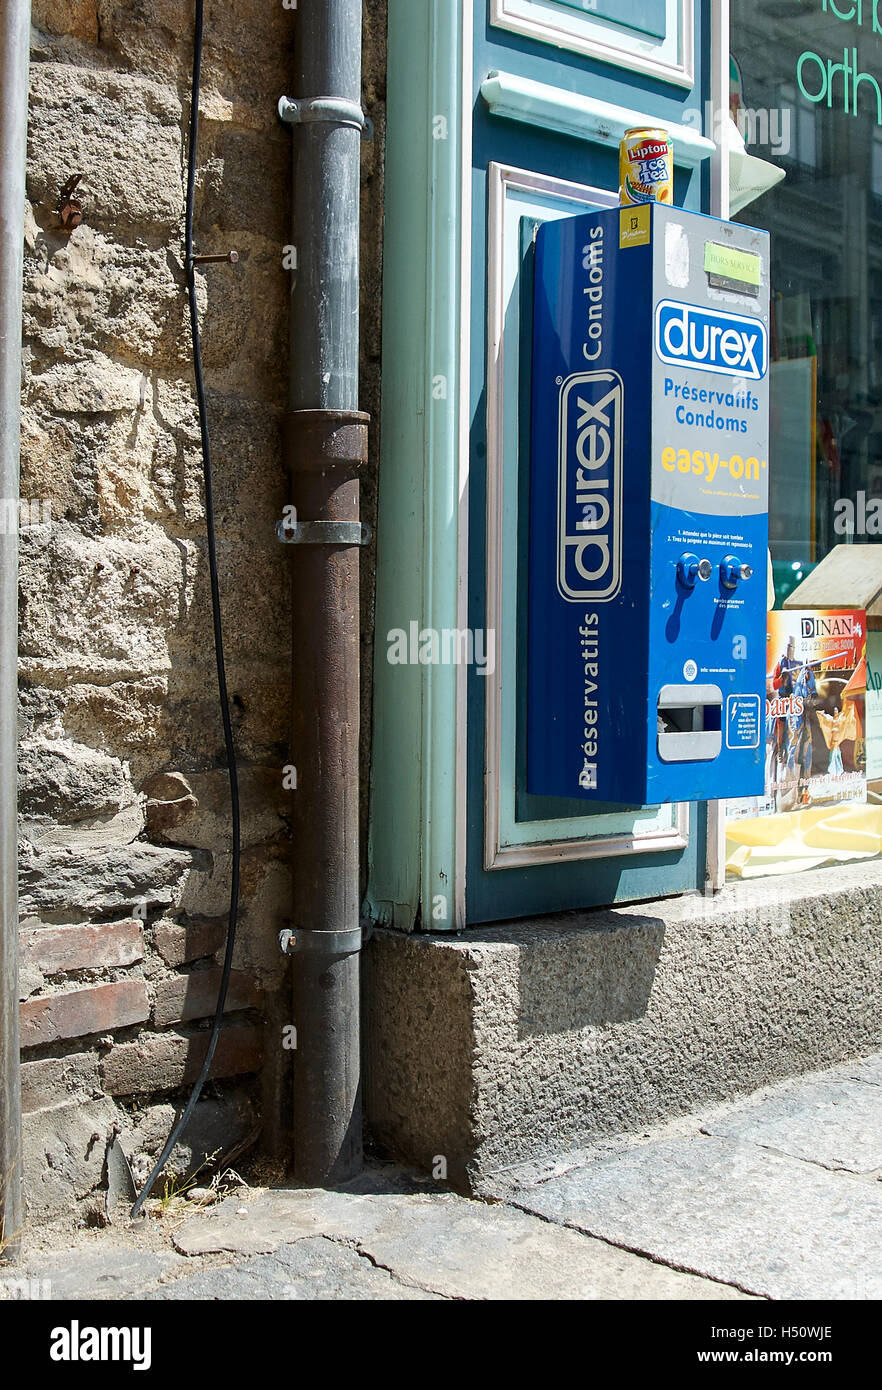 Durex un distributeur automatique sur un extérieur d'un magasin à Dinan France. Durex un distributeur automatique sur un extérieur d'un magasin à Dinan France. Banque D'Images